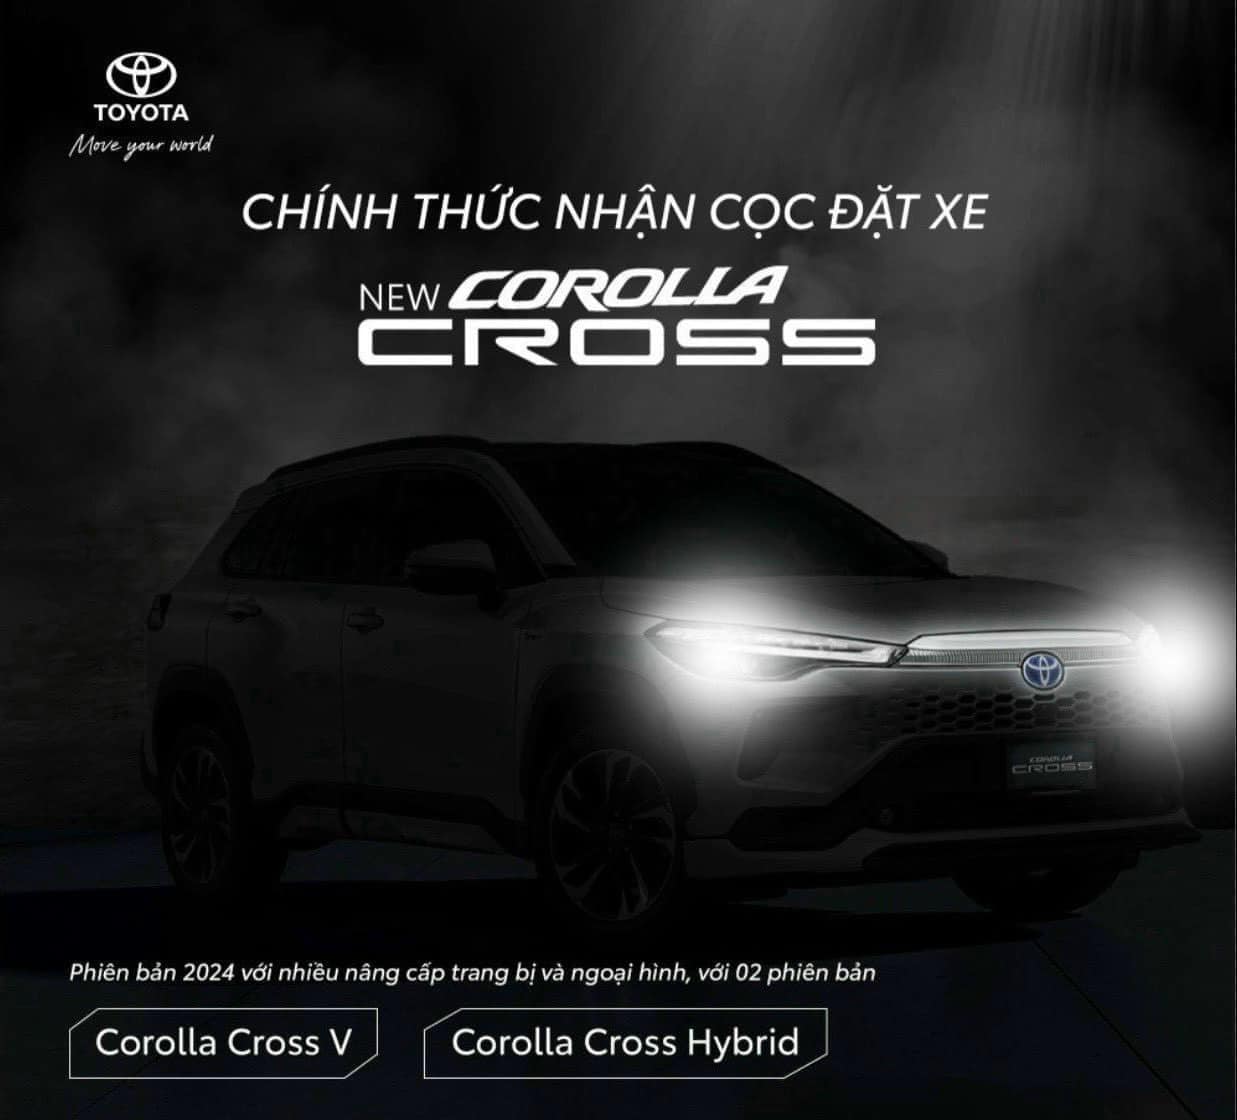 Đại lý ồ ạt nhận cọc Corolla Cross 2024: 2 phiên bản, trang bị giống hệt bản Thái, giao xe tháng 5- Ảnh 1.